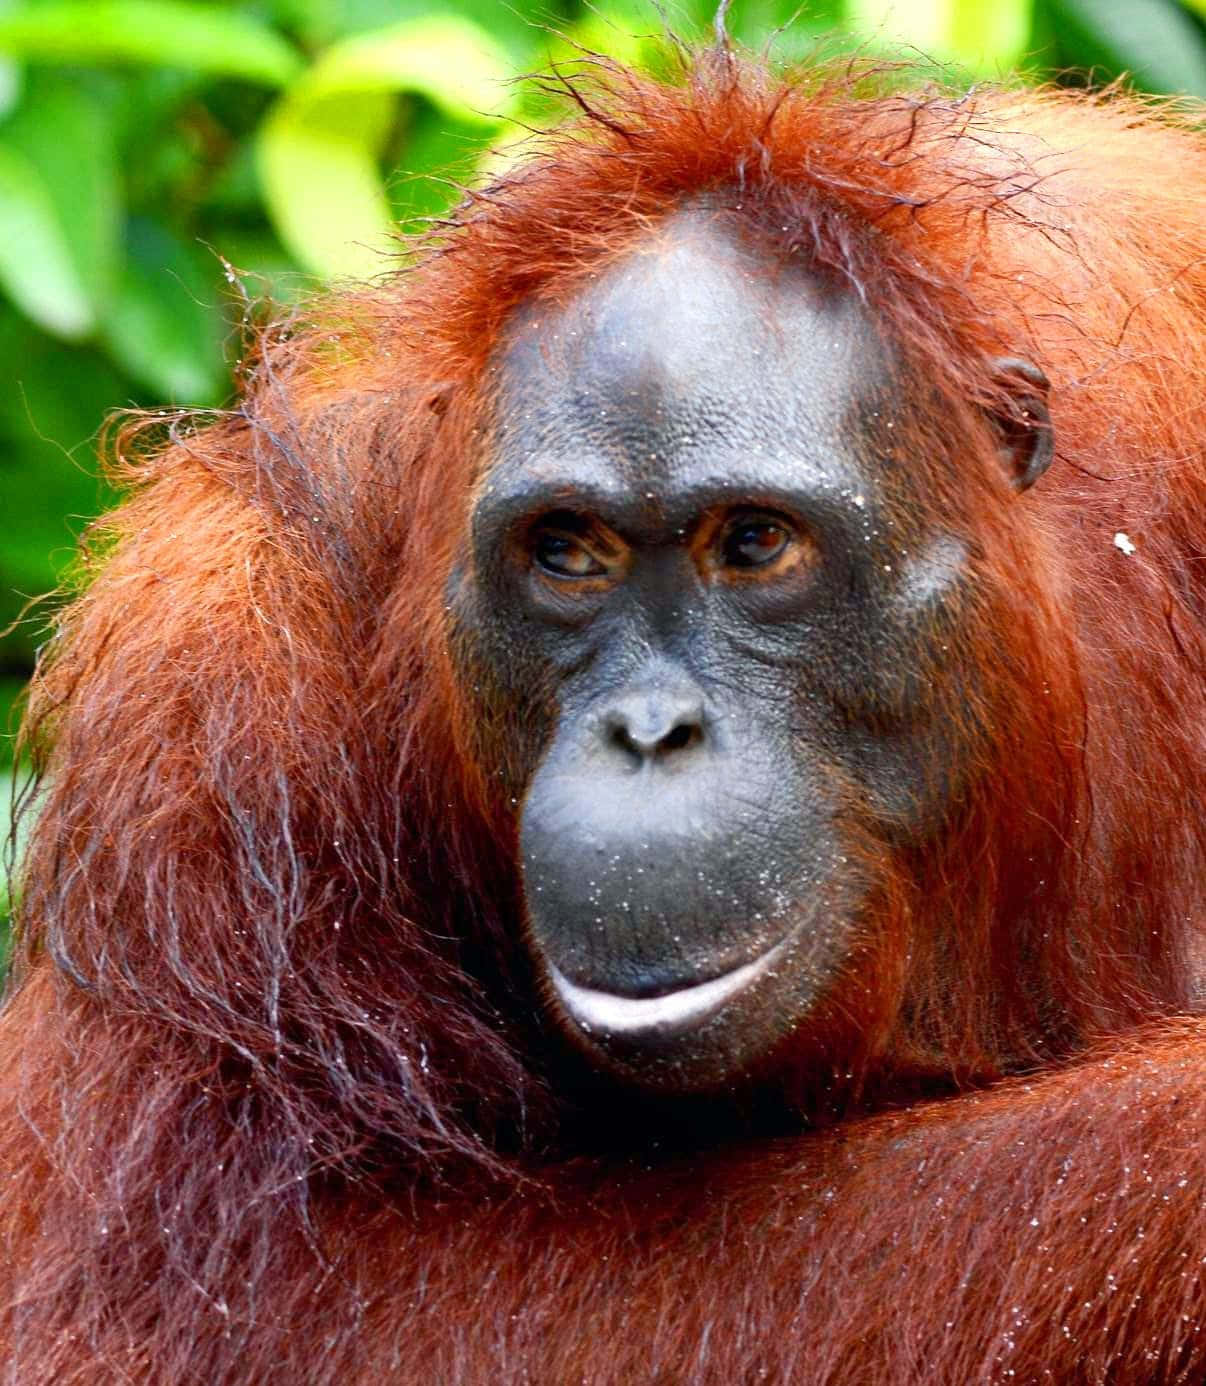 A close up of an adorable orangutan